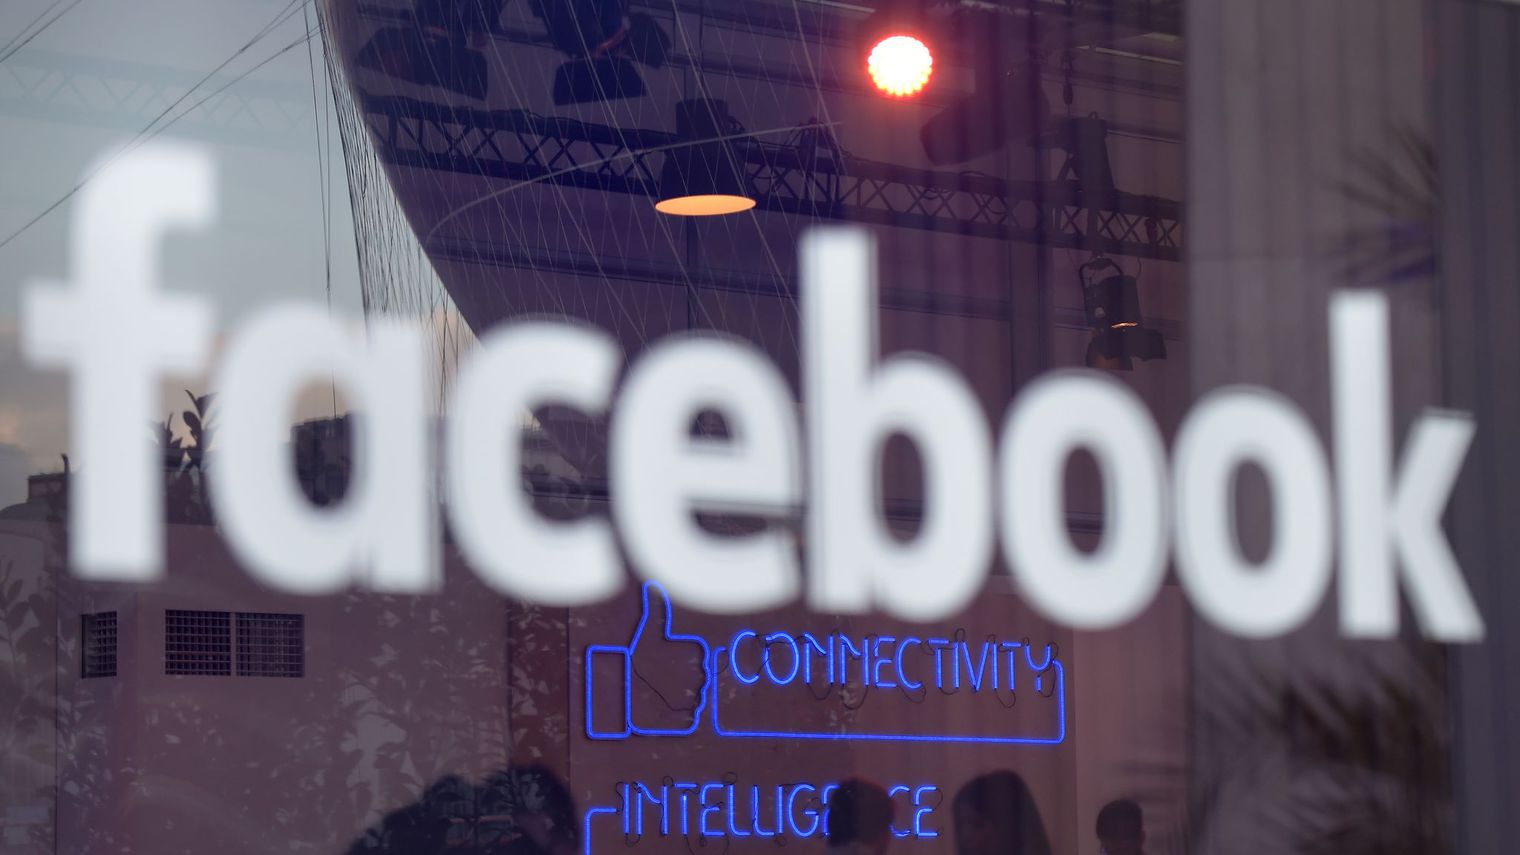 Désireux de fidéliser ses membres, Facebook se lance dans le commerce en ligne